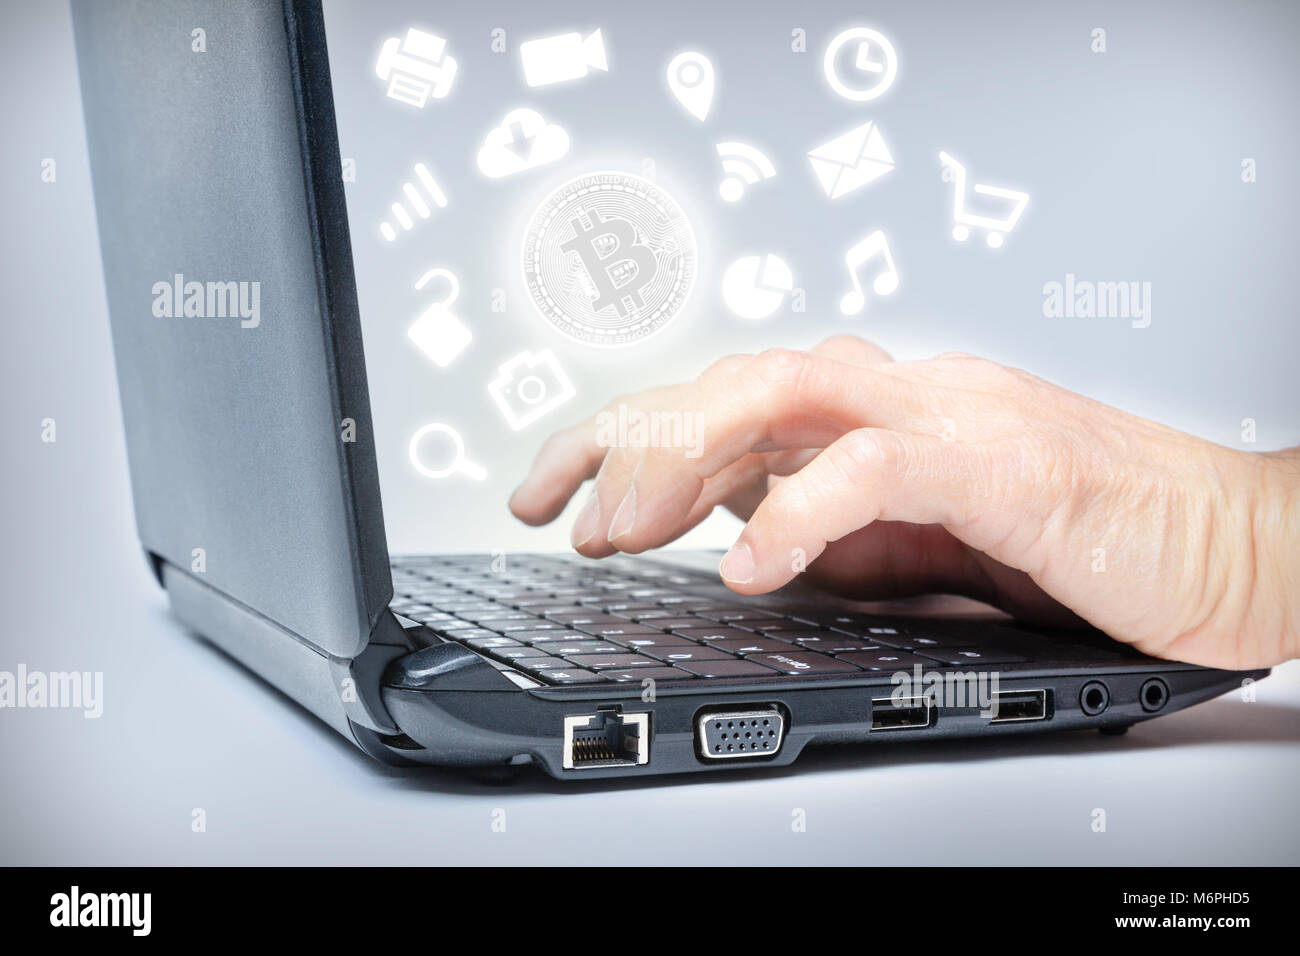 Hände schreiben auf Tastatur mit Bitcoin in den Mittelpunkt der gemeinsamen Medien Symbole. Konzept der wachsenden Verbreitung der digitalen virtuellen cryptocurrency Zahlung Stockfoto